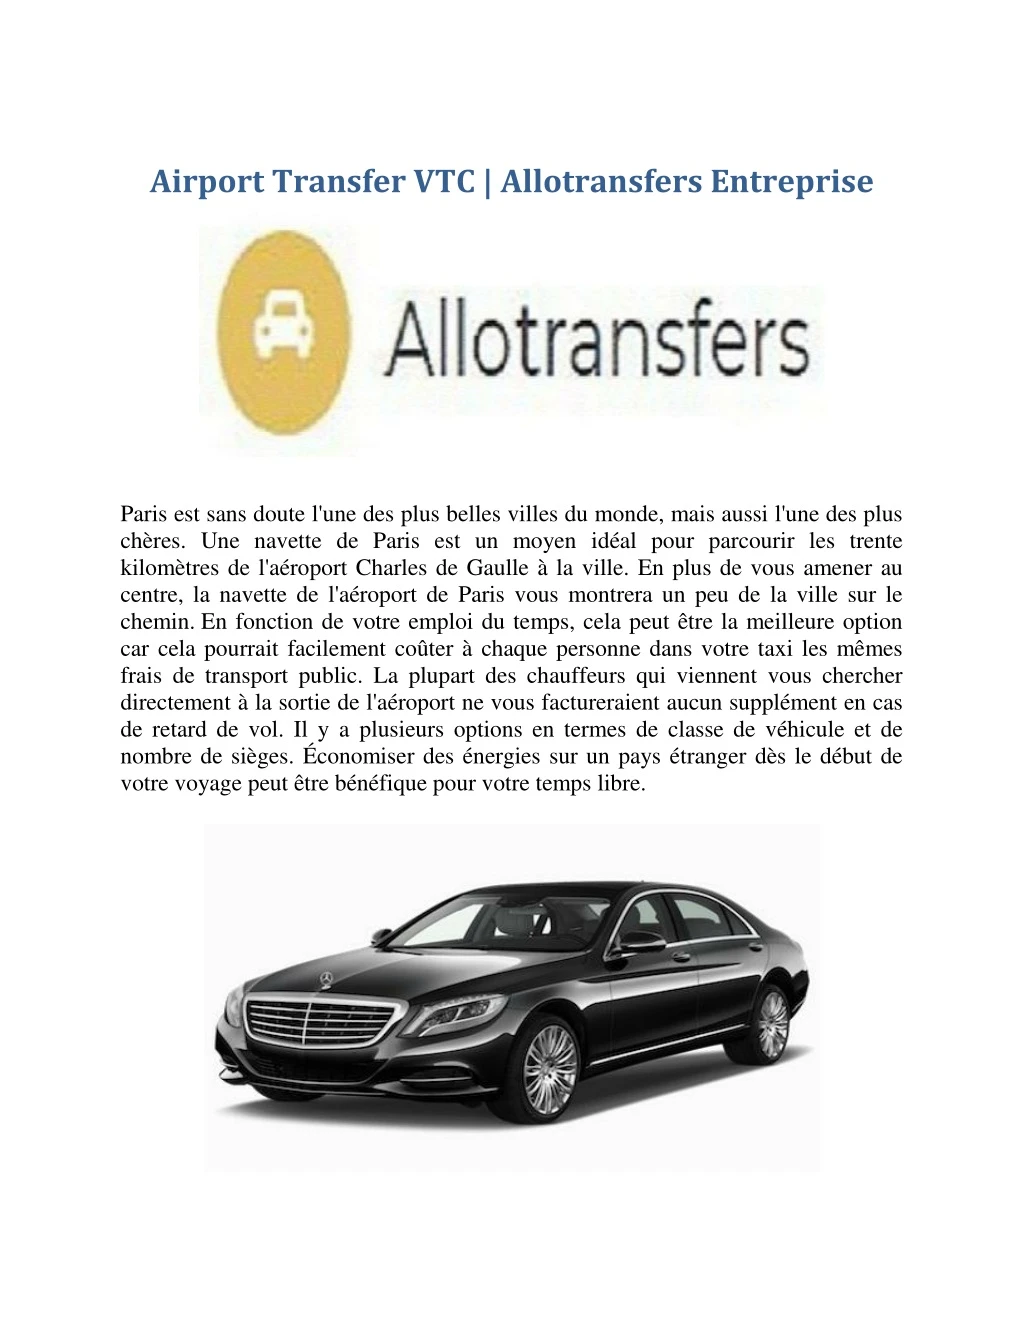 airport transfer vtc allotransfers entreprise